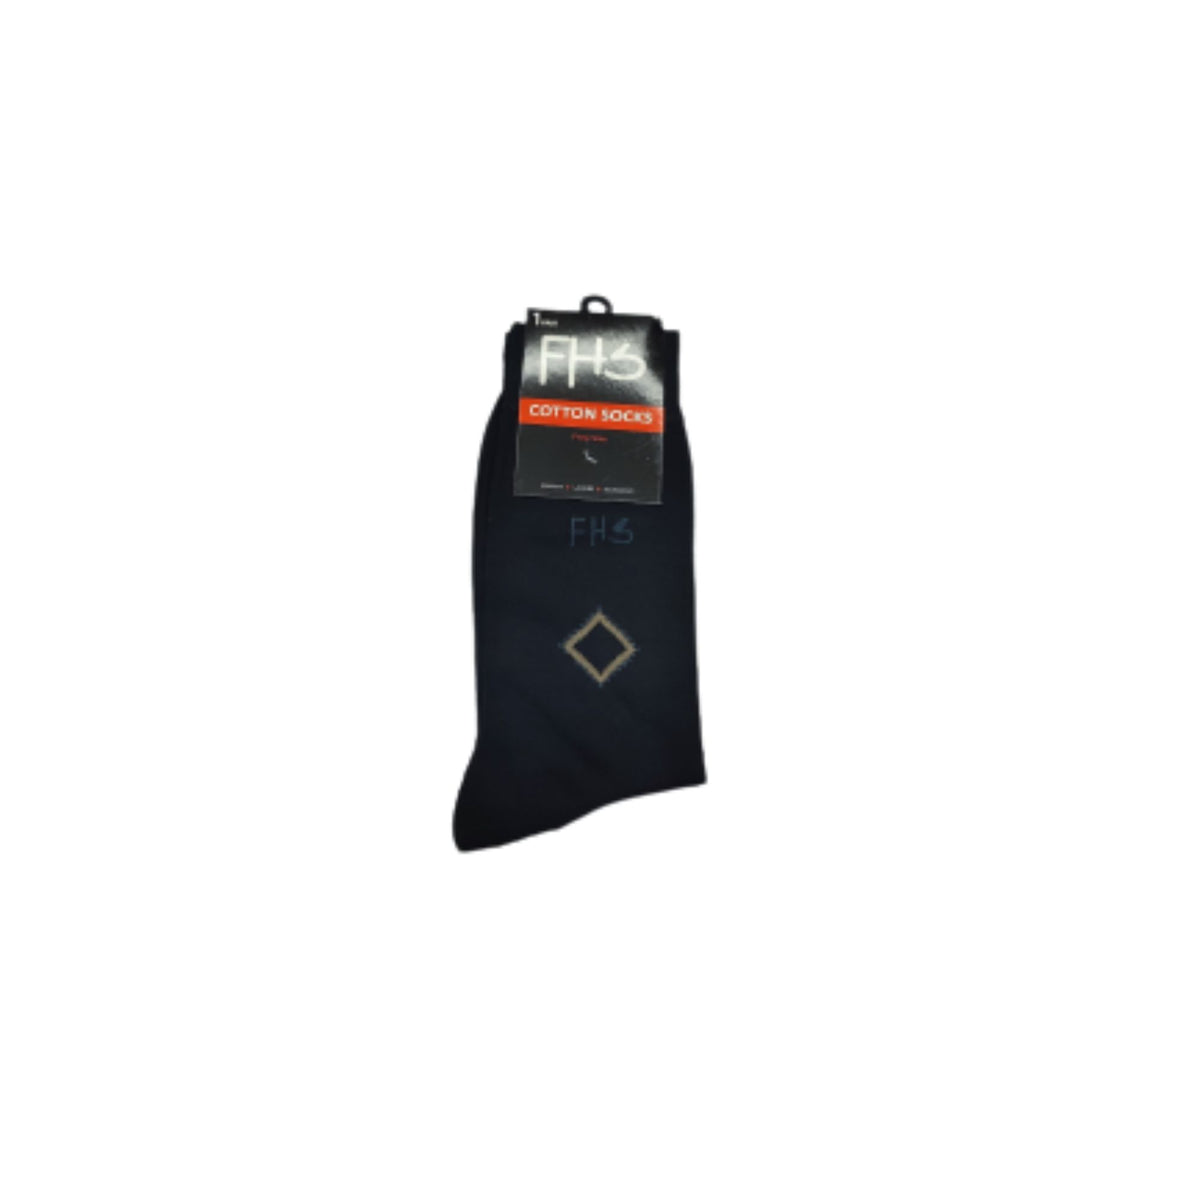 Classic Black Socks for Men| FHS Official